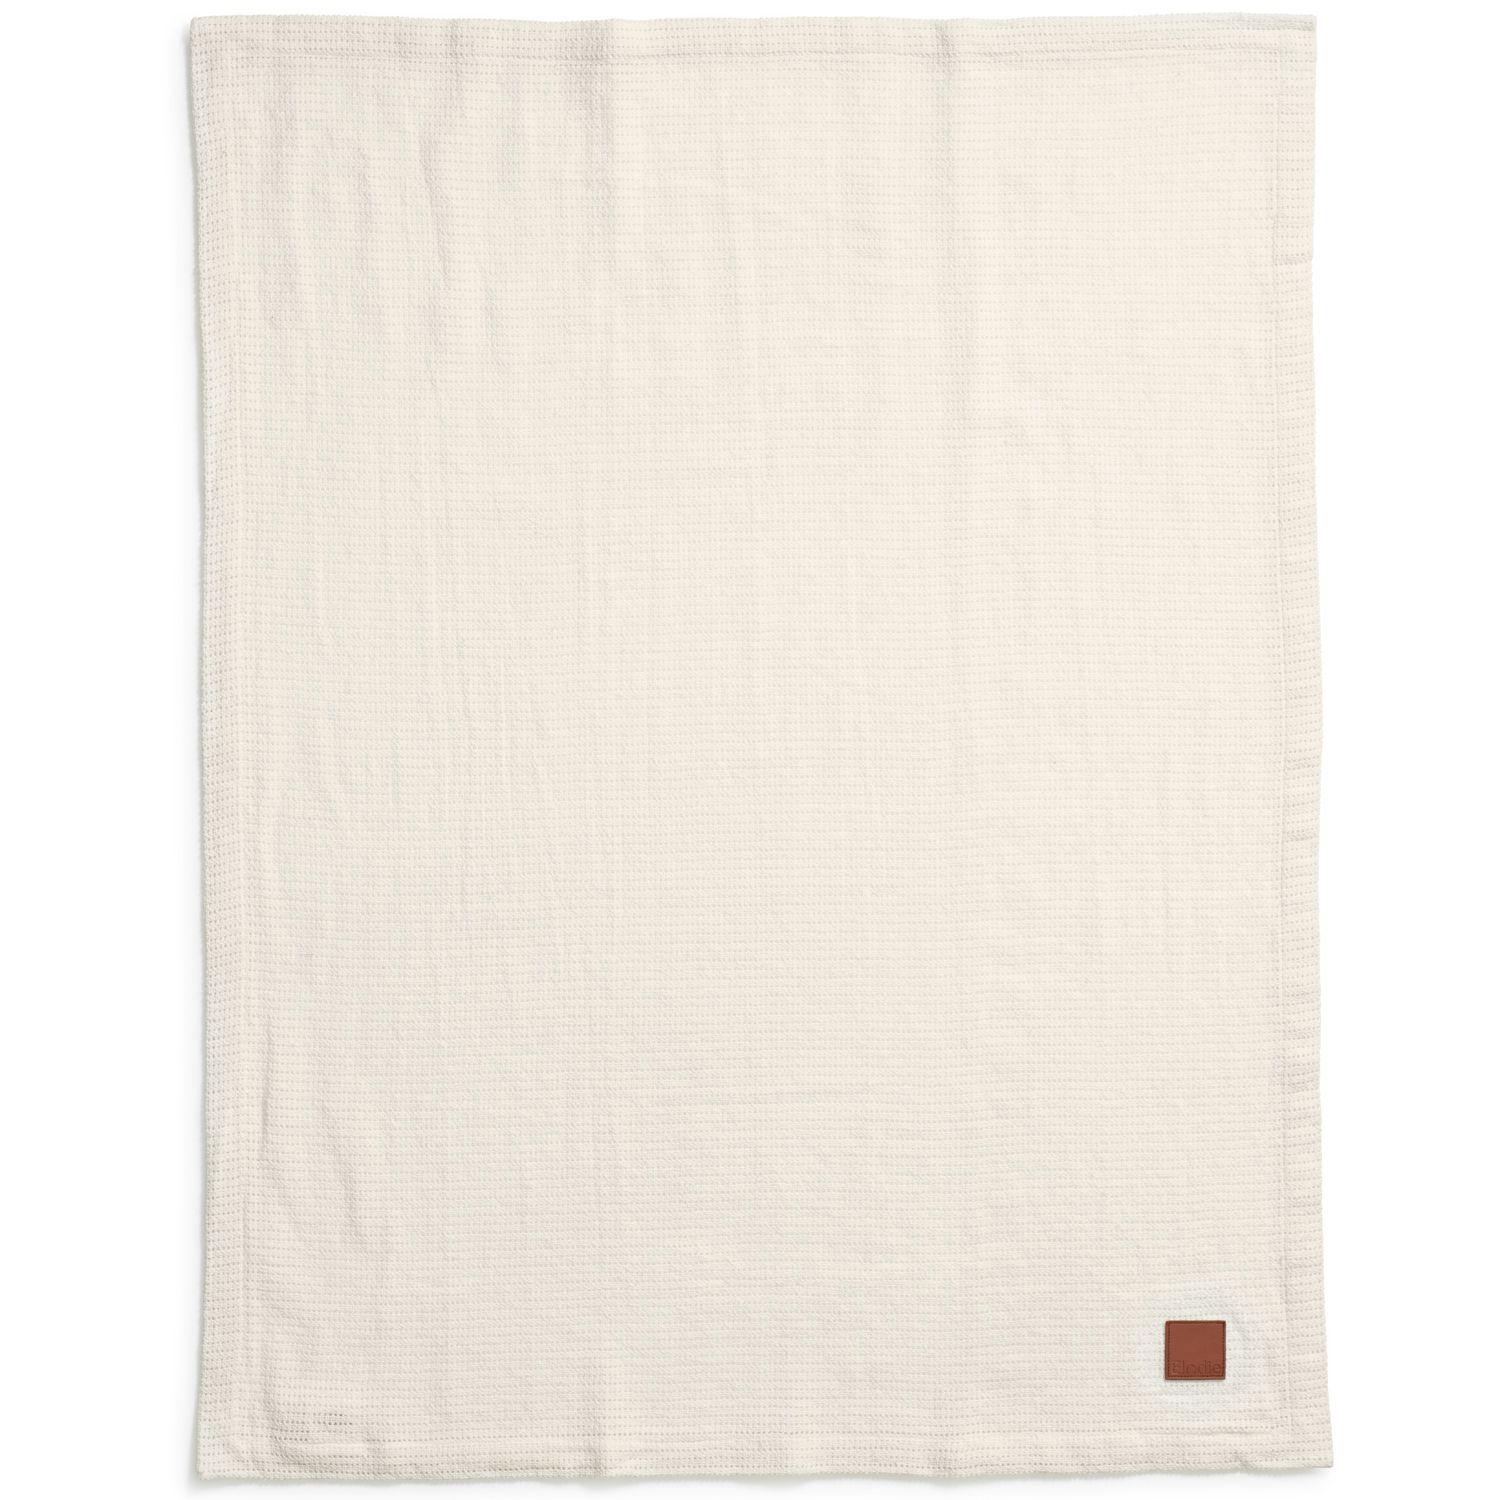 Cellular Blanket - Vanilla white, ELODIE DETAILS